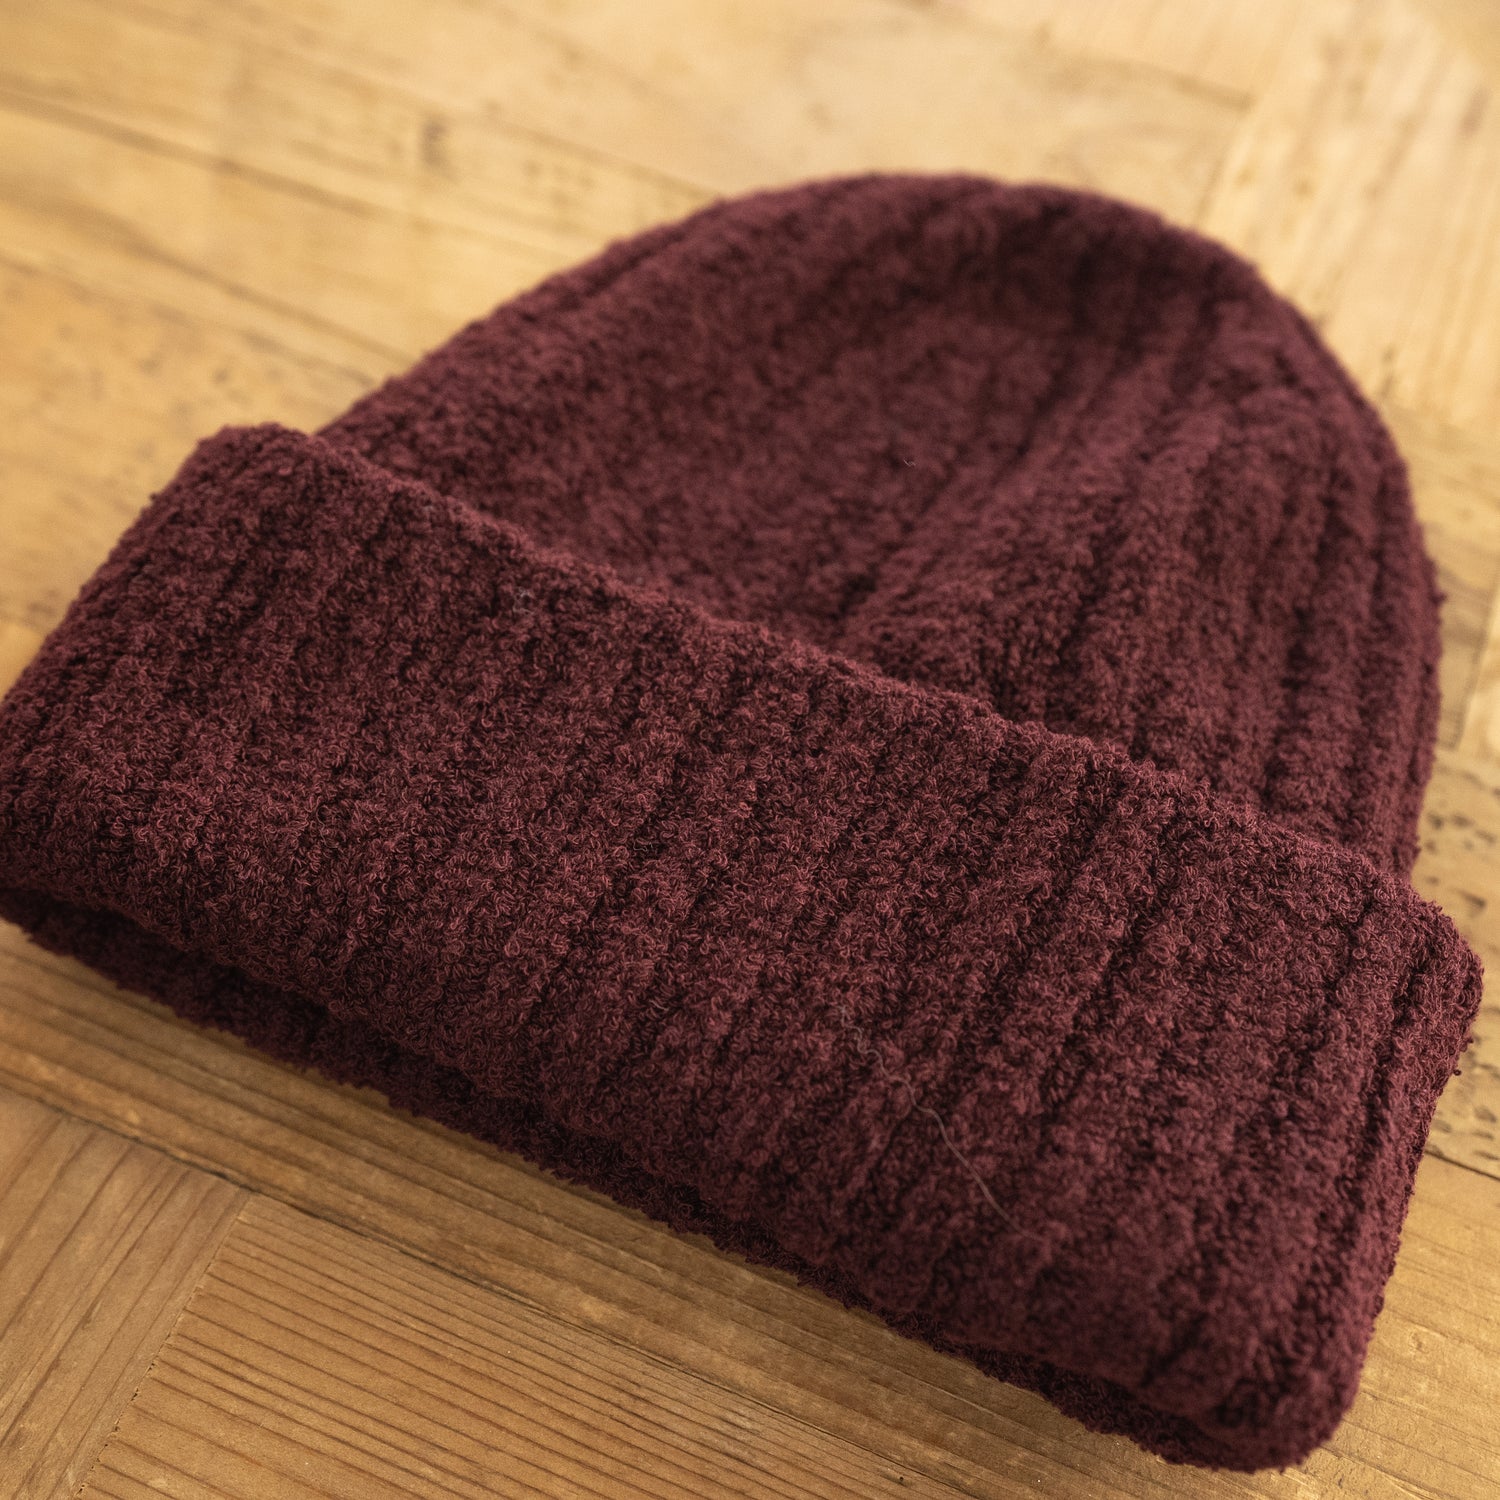 Kinema(キネマ) / pile room knit cap ニット帽 | skisharp.com